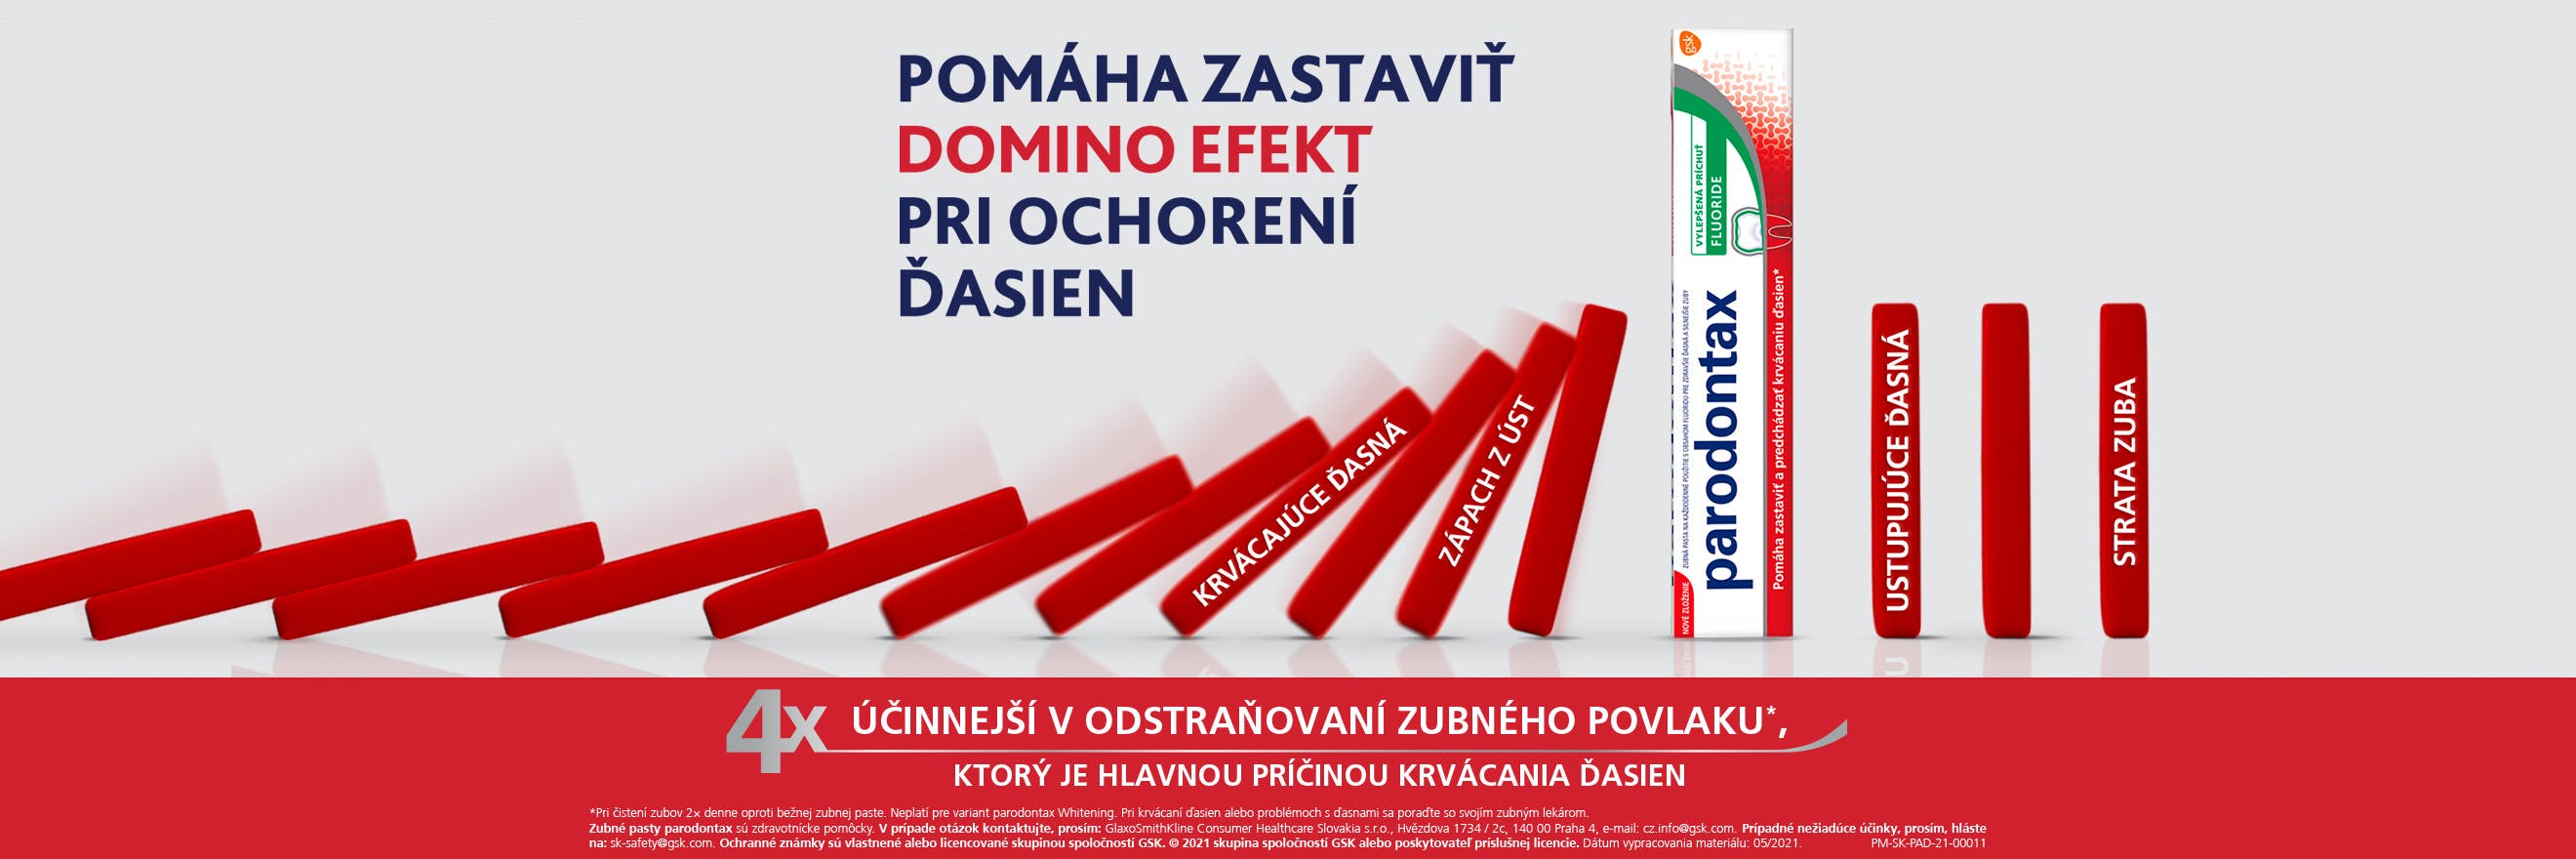 homepage-dominoes_slovalia